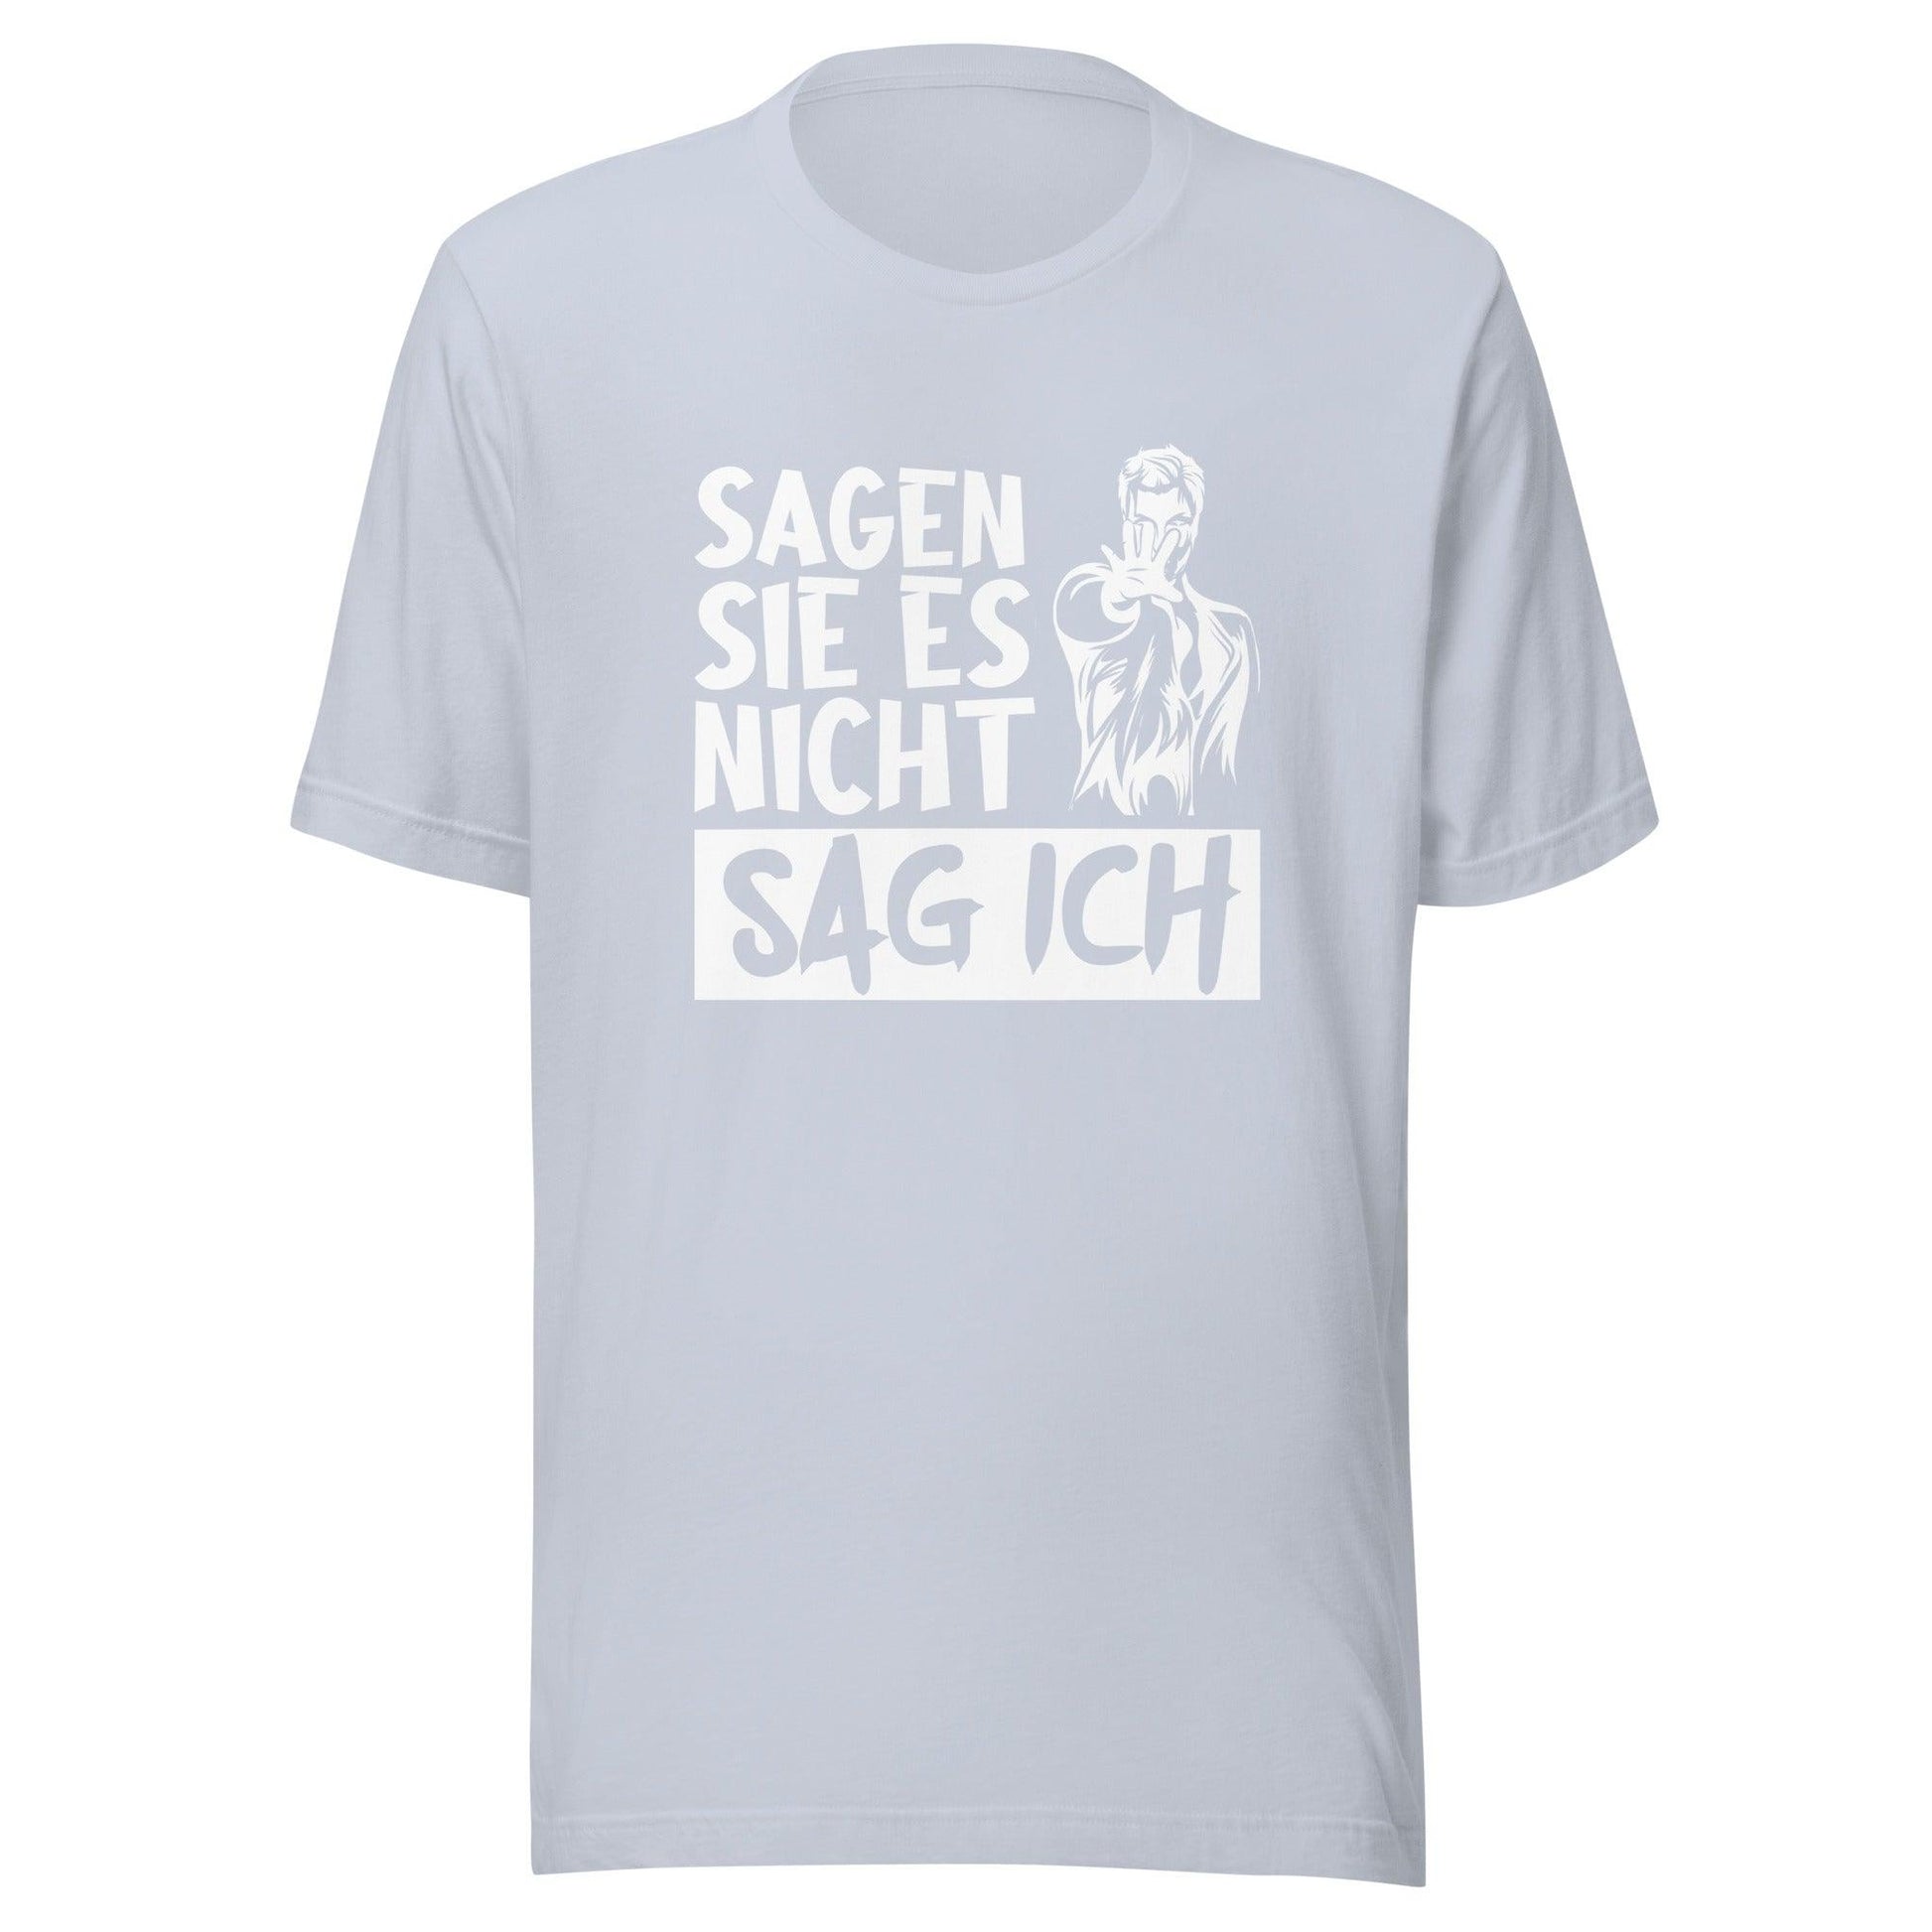 SAG ICH T-Shirt - MAXIMALSCHRADIN